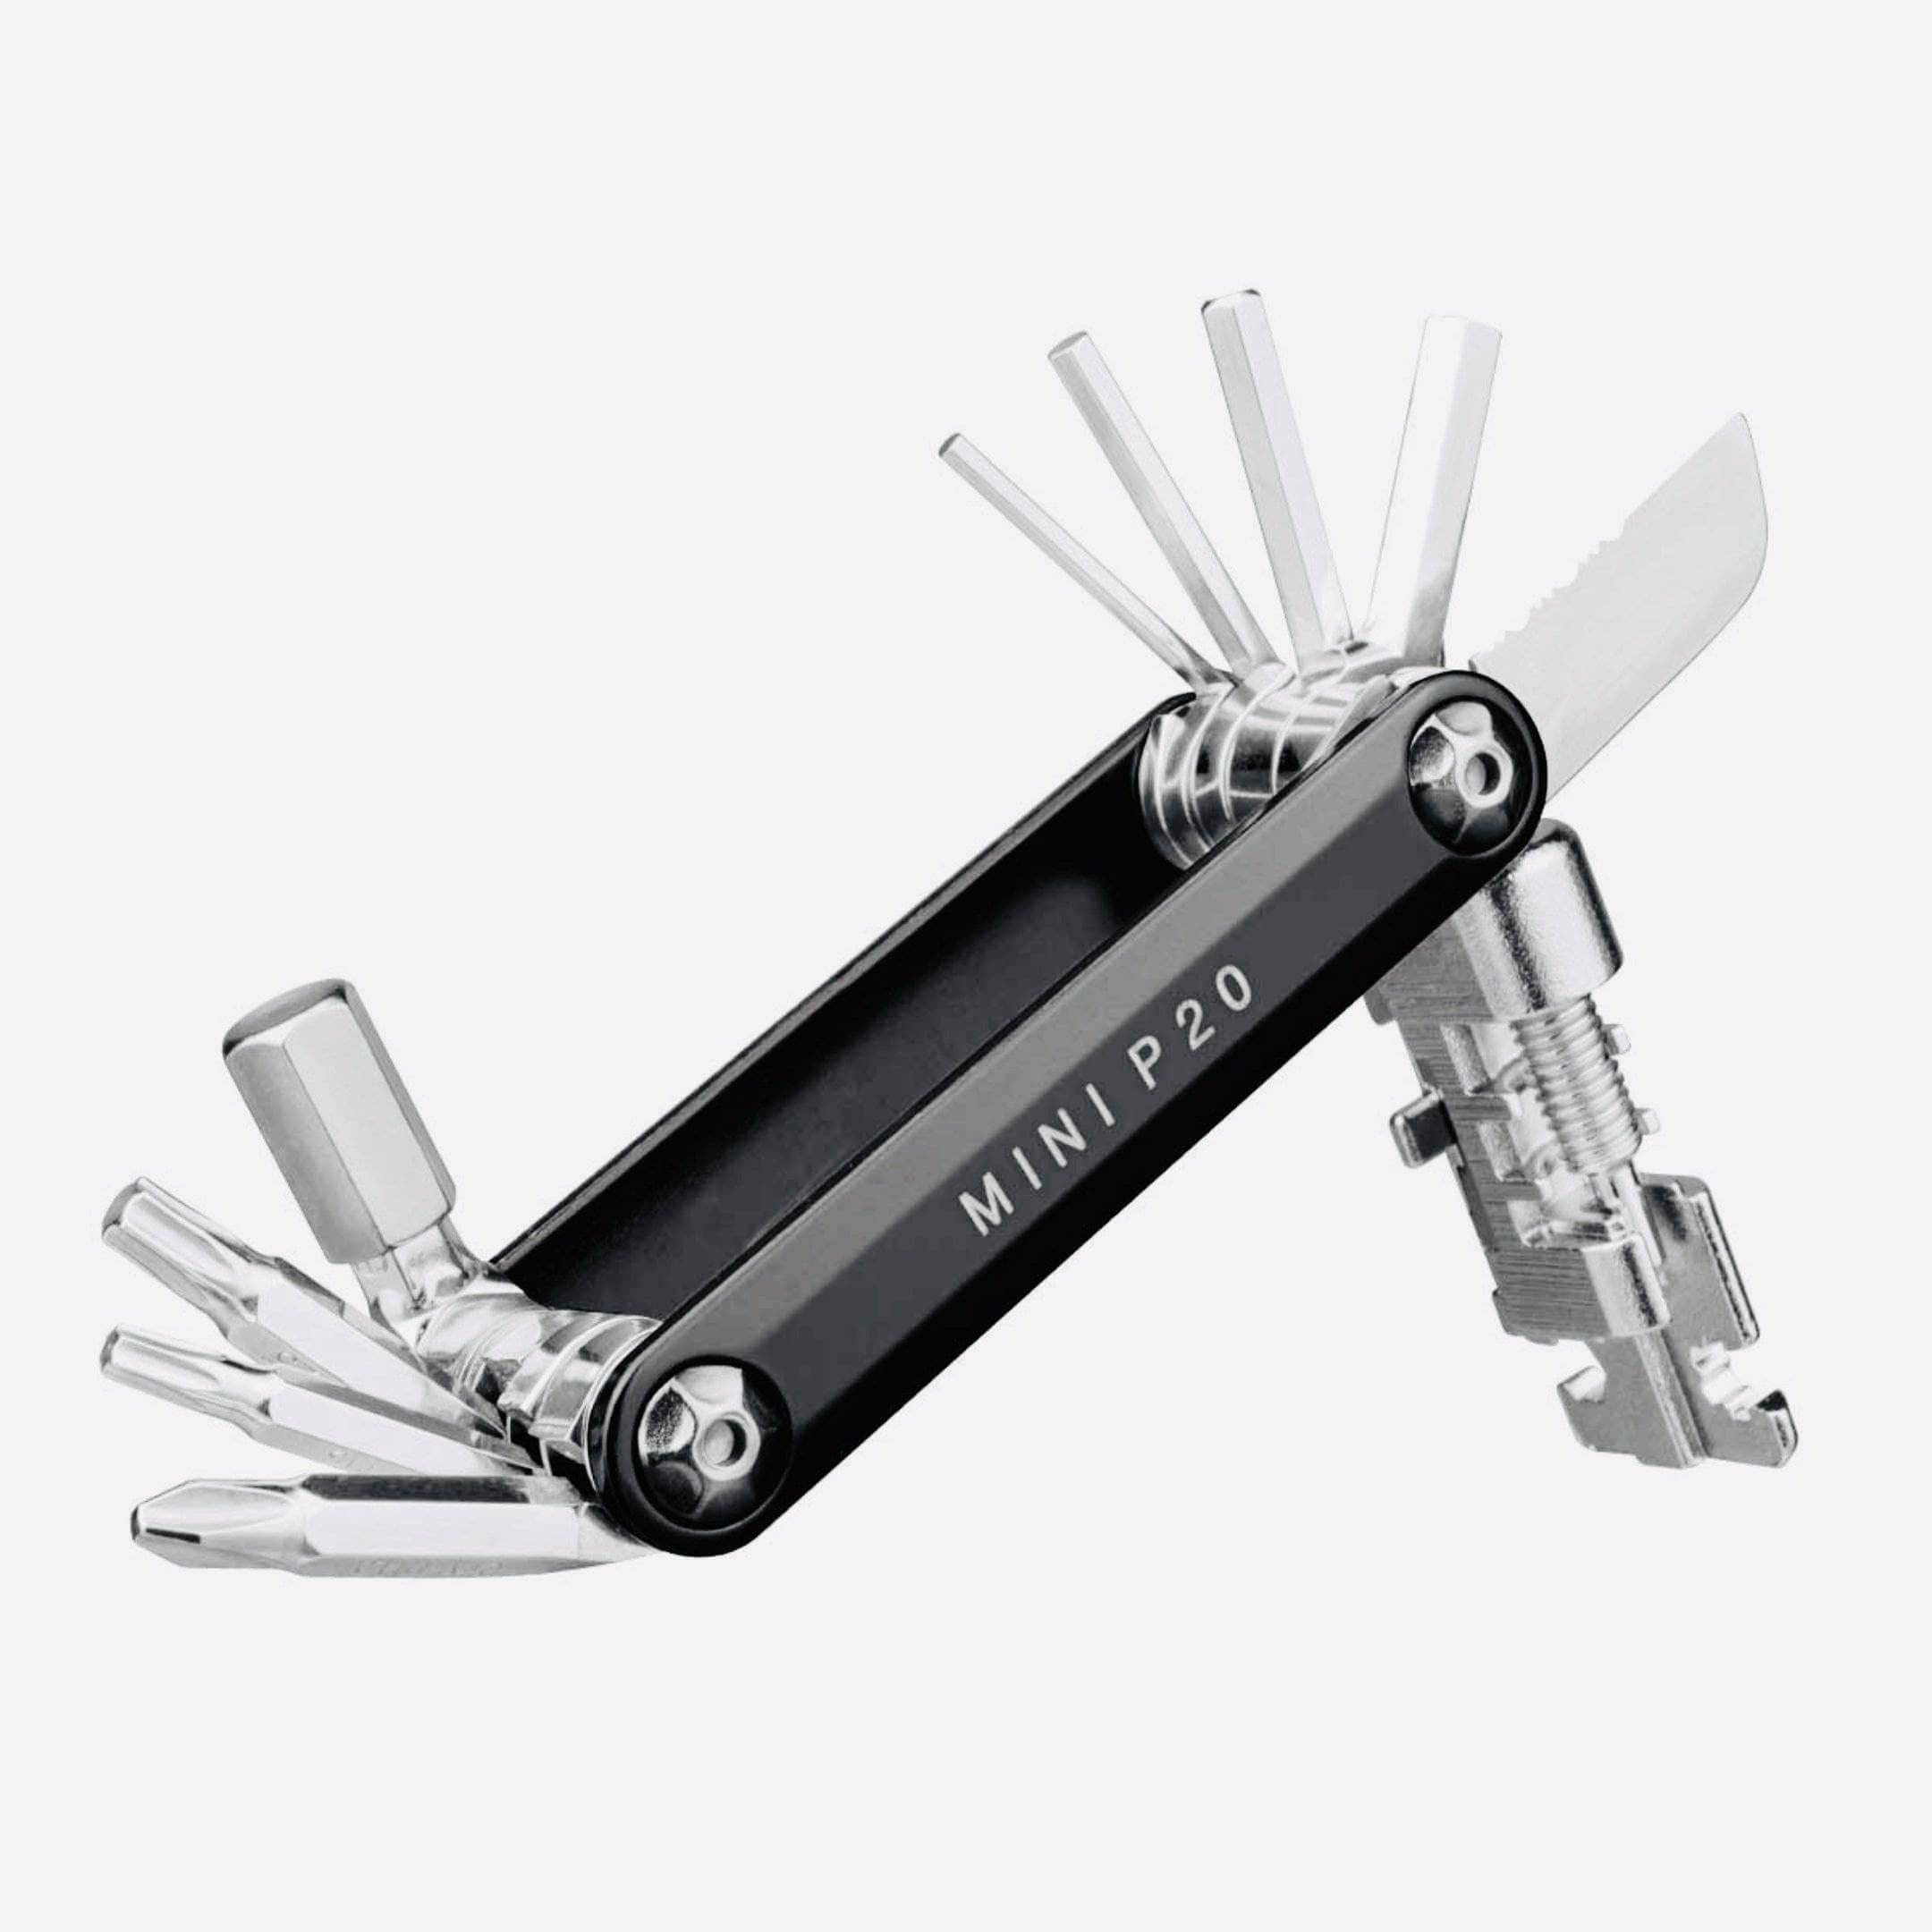 Topeak Mini P20 Multi-Tool Black Accessories - Tools - Multi-Tools